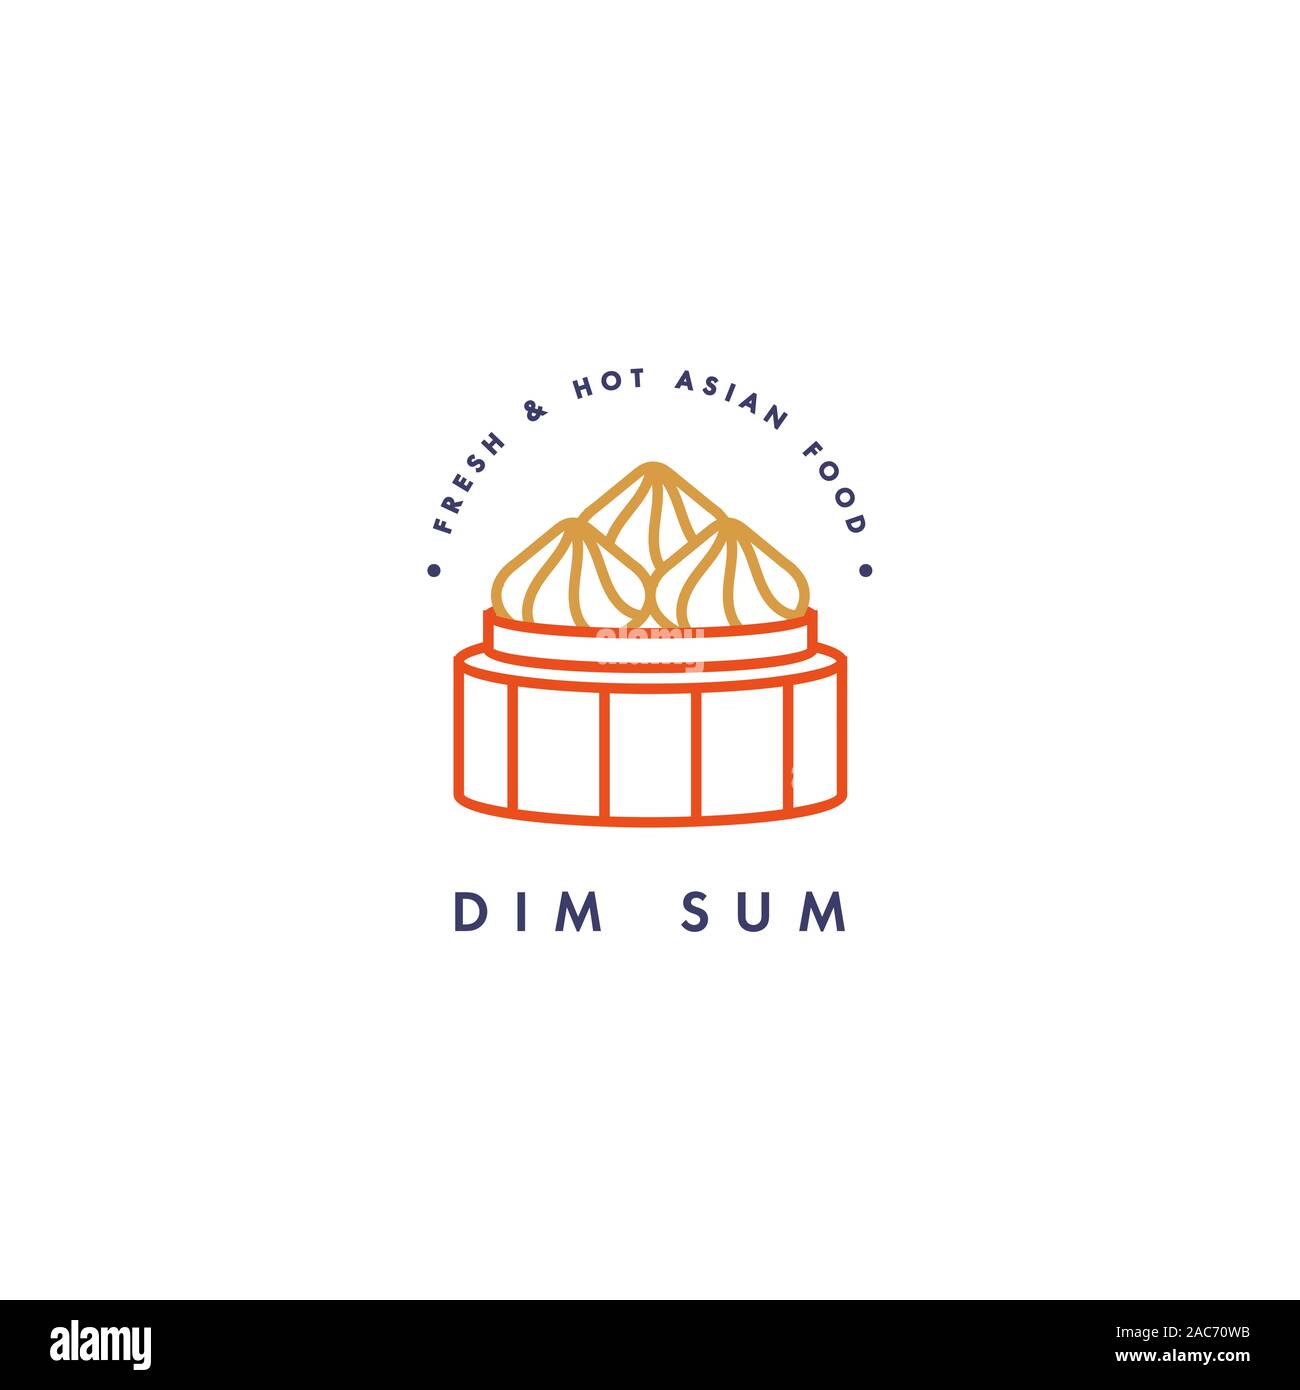 Logo Vector et modèle de conception de l'emblème ou logo. Alimentation asiatique - dim sum. Logos linéaire. Illustration de Vecteur